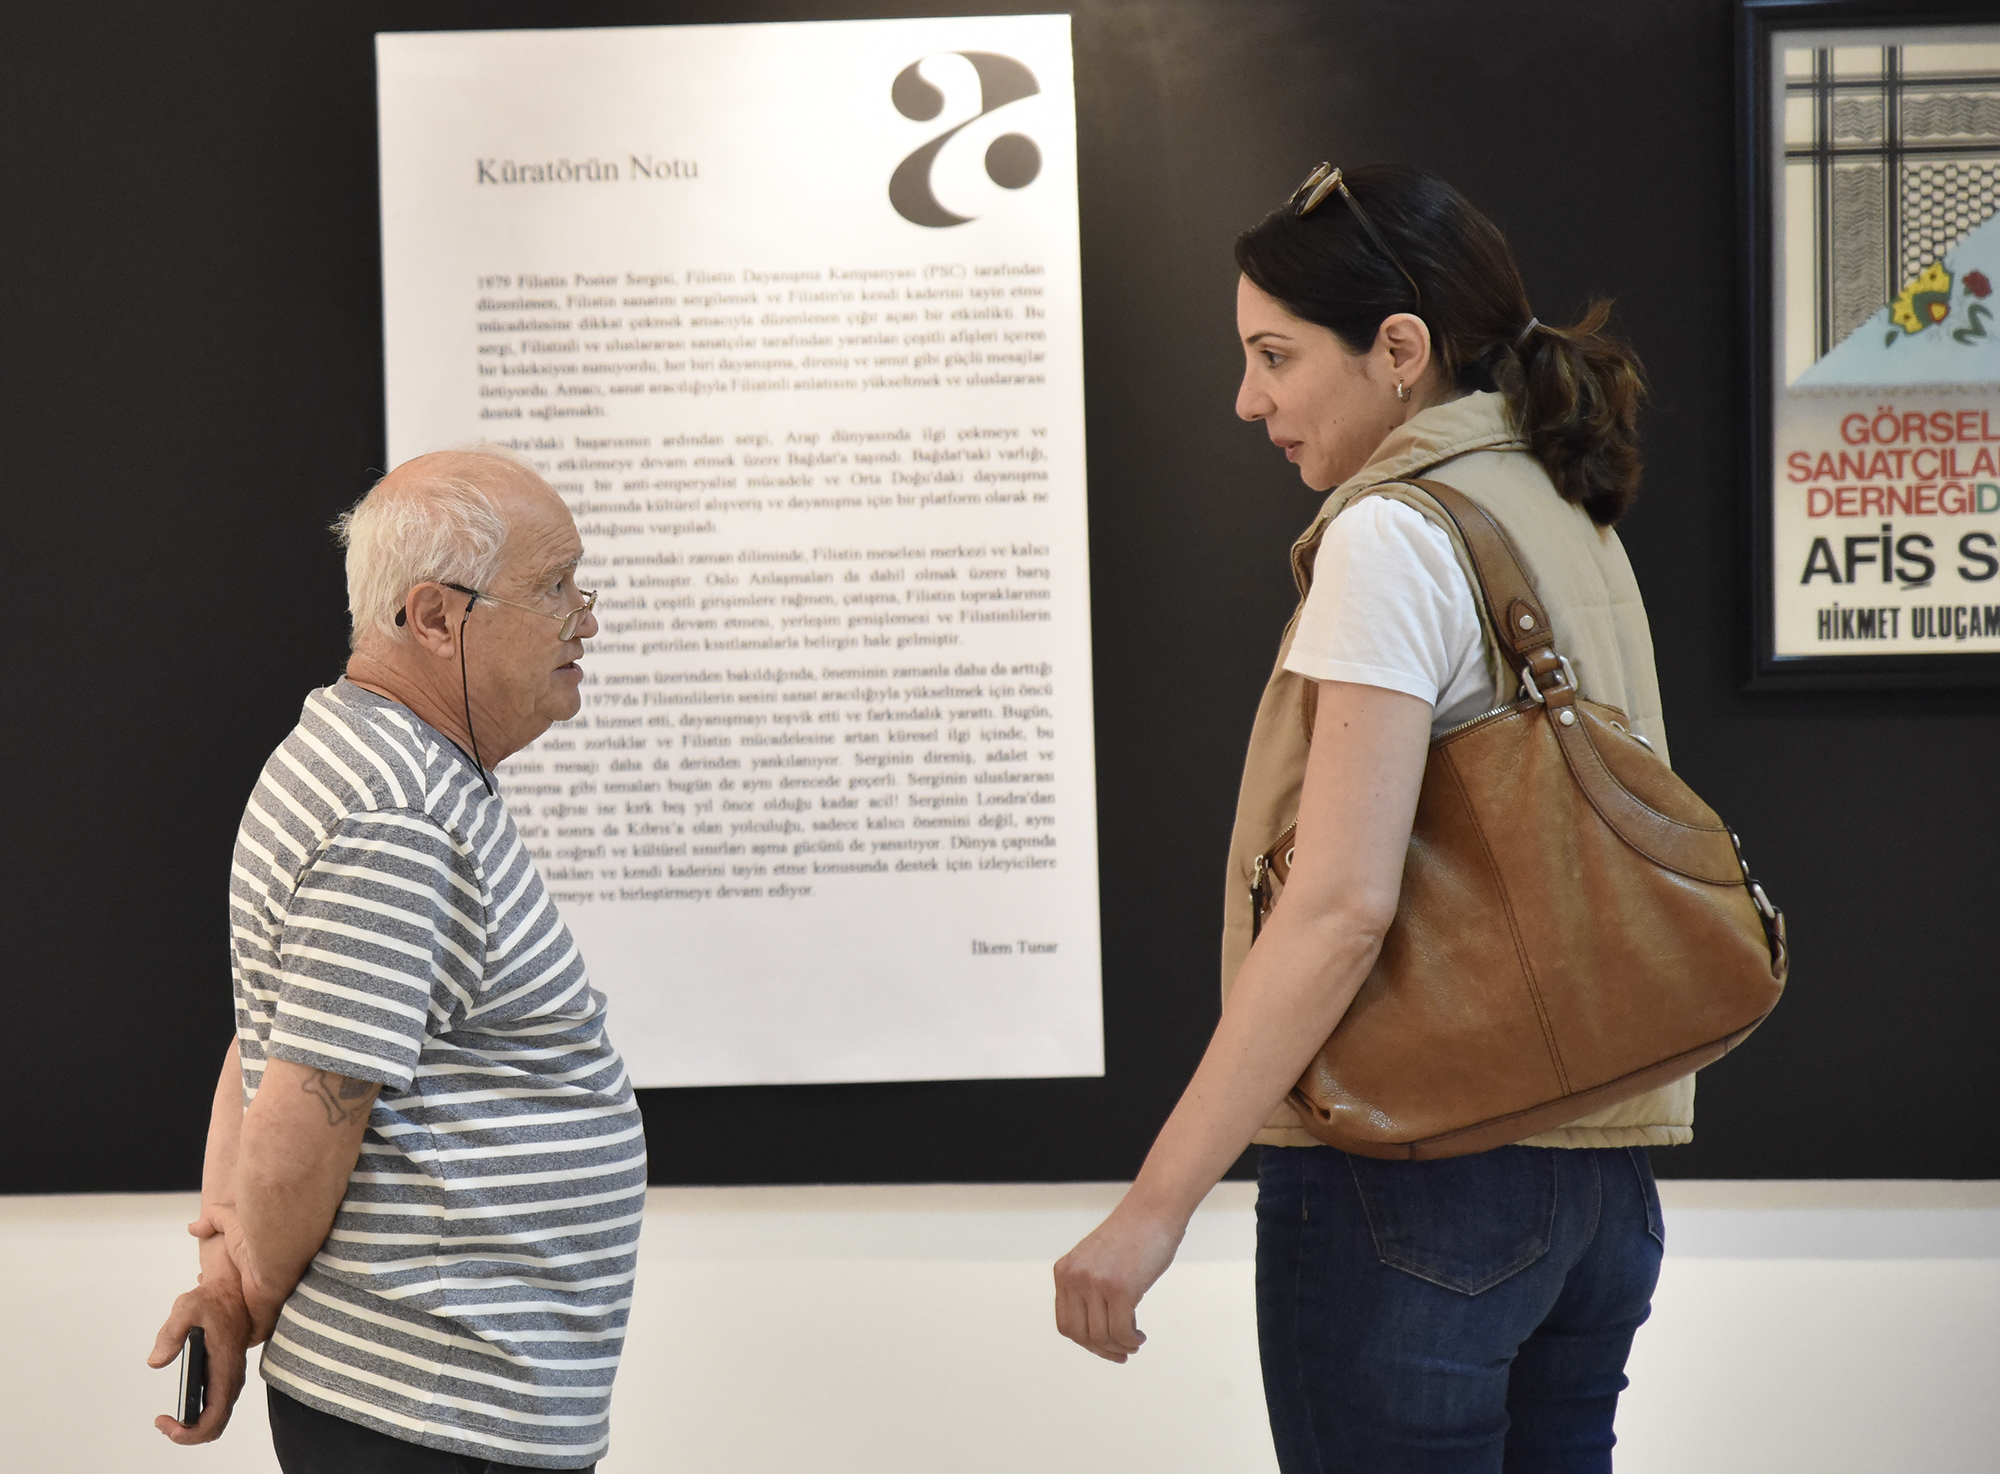 Eklektik Manifest – Lefkoşa Bienali’ne Giriş projesi 22 Haziran’a kadar Başkent Lefkoşa’da devam ediyor